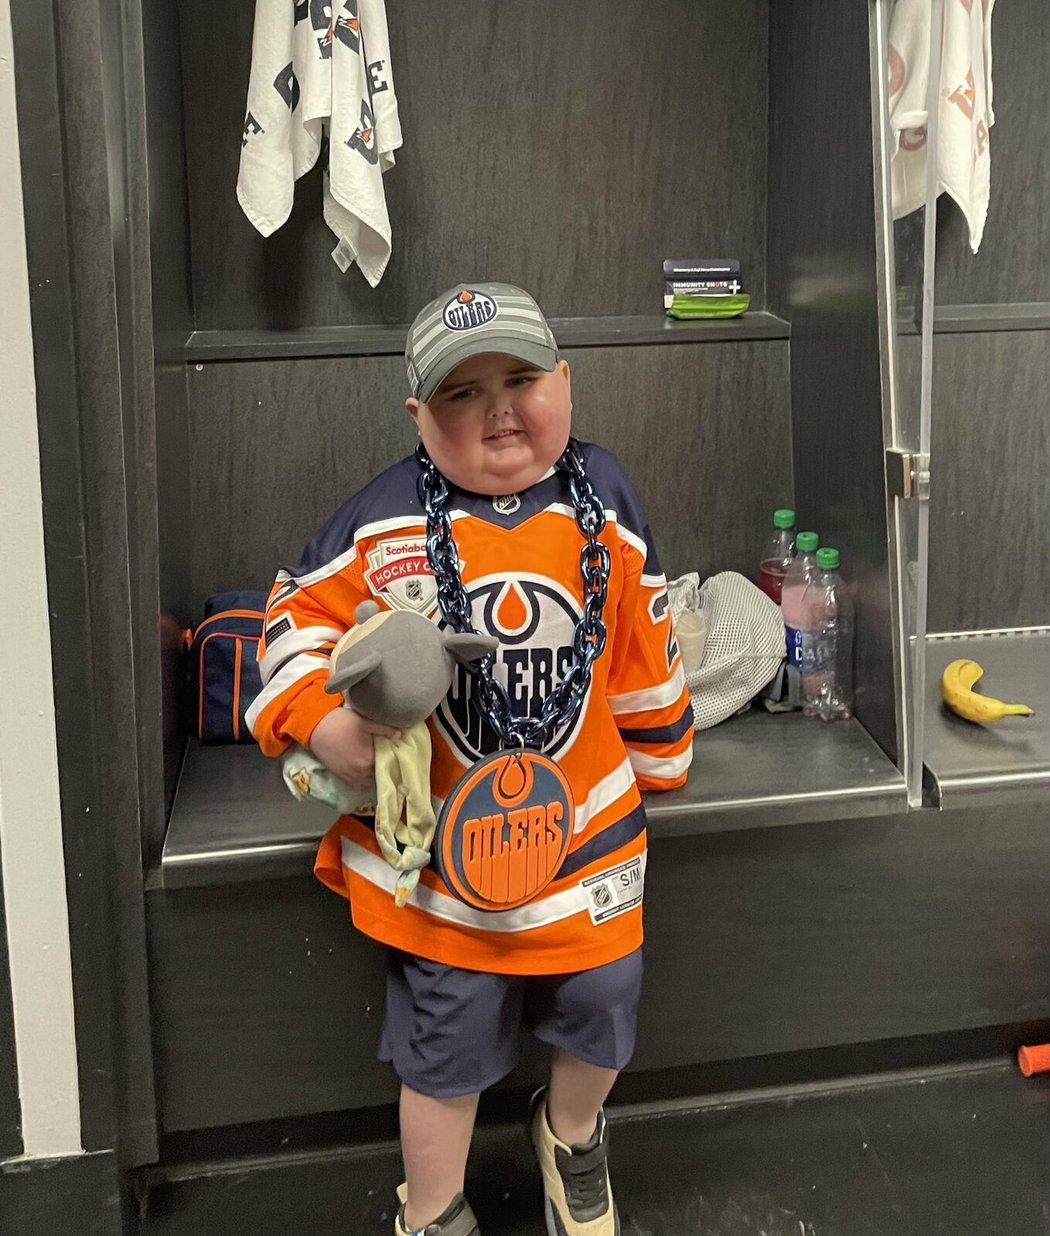 Šestiletý Ben Stelter, který trpěl rakovinou mozku, se stal pro hokejisty Oilers obrovskou inspirací. Jeho otec ale nedávno bohužel oznámil, že malý Ben svůj boj s rakovinou prohrál